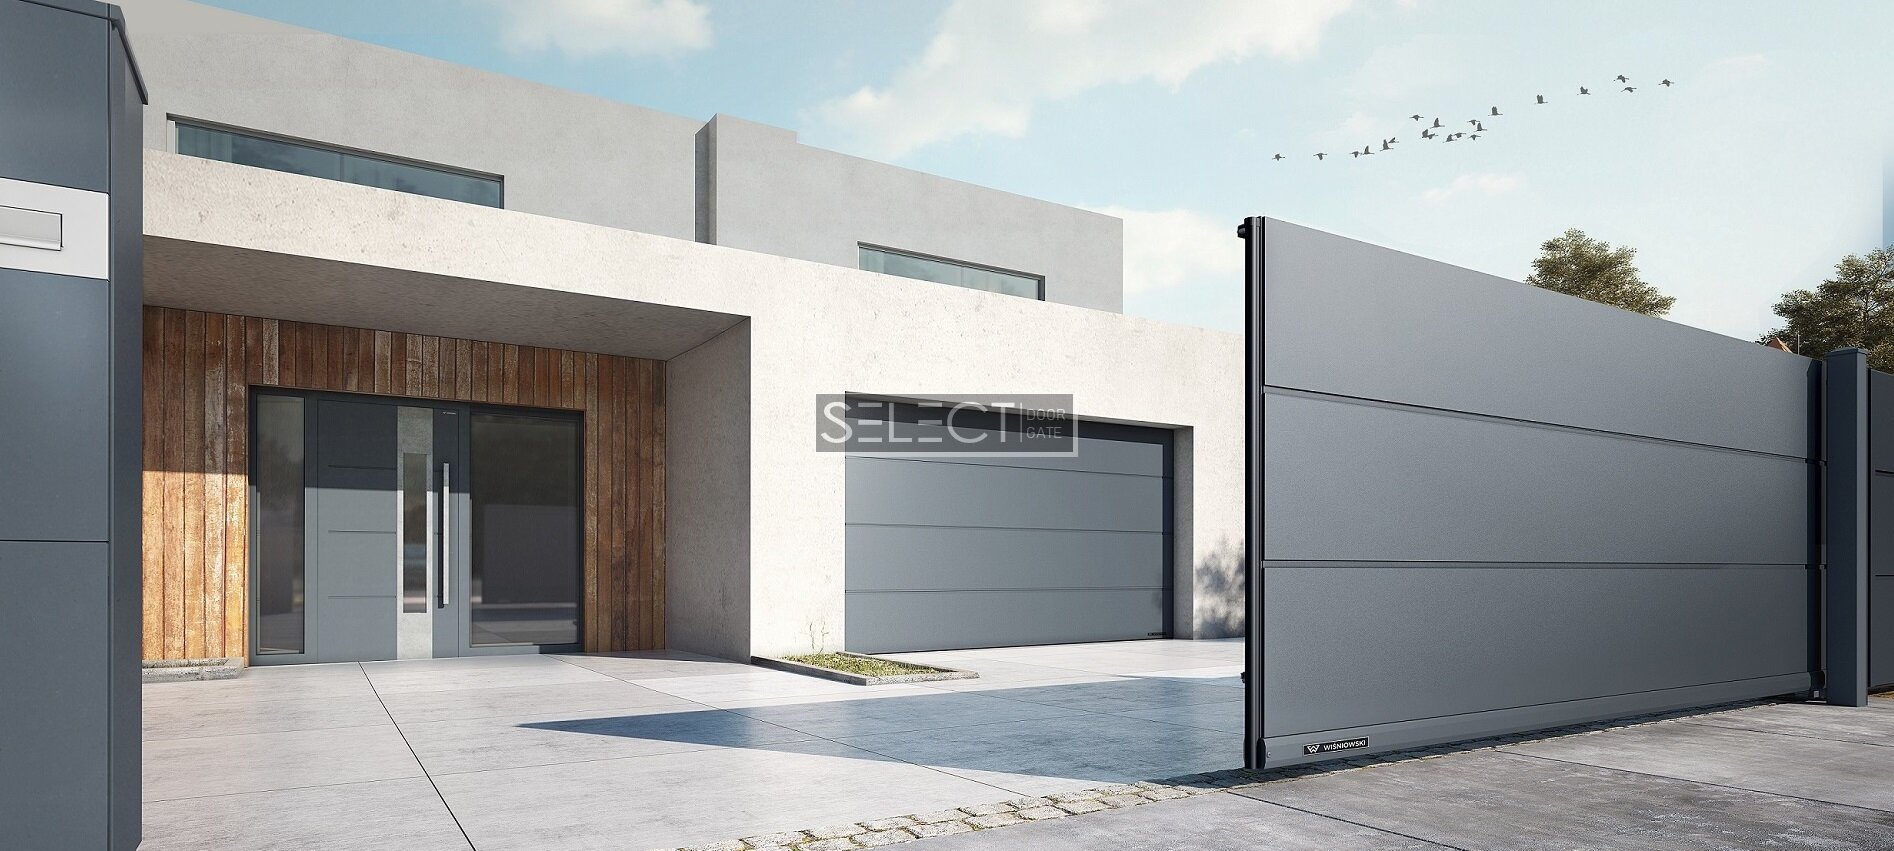 WISNIOWSKI - Двери для частного дома наружные уличные алюминиевые - Гаражные ворота подъемные